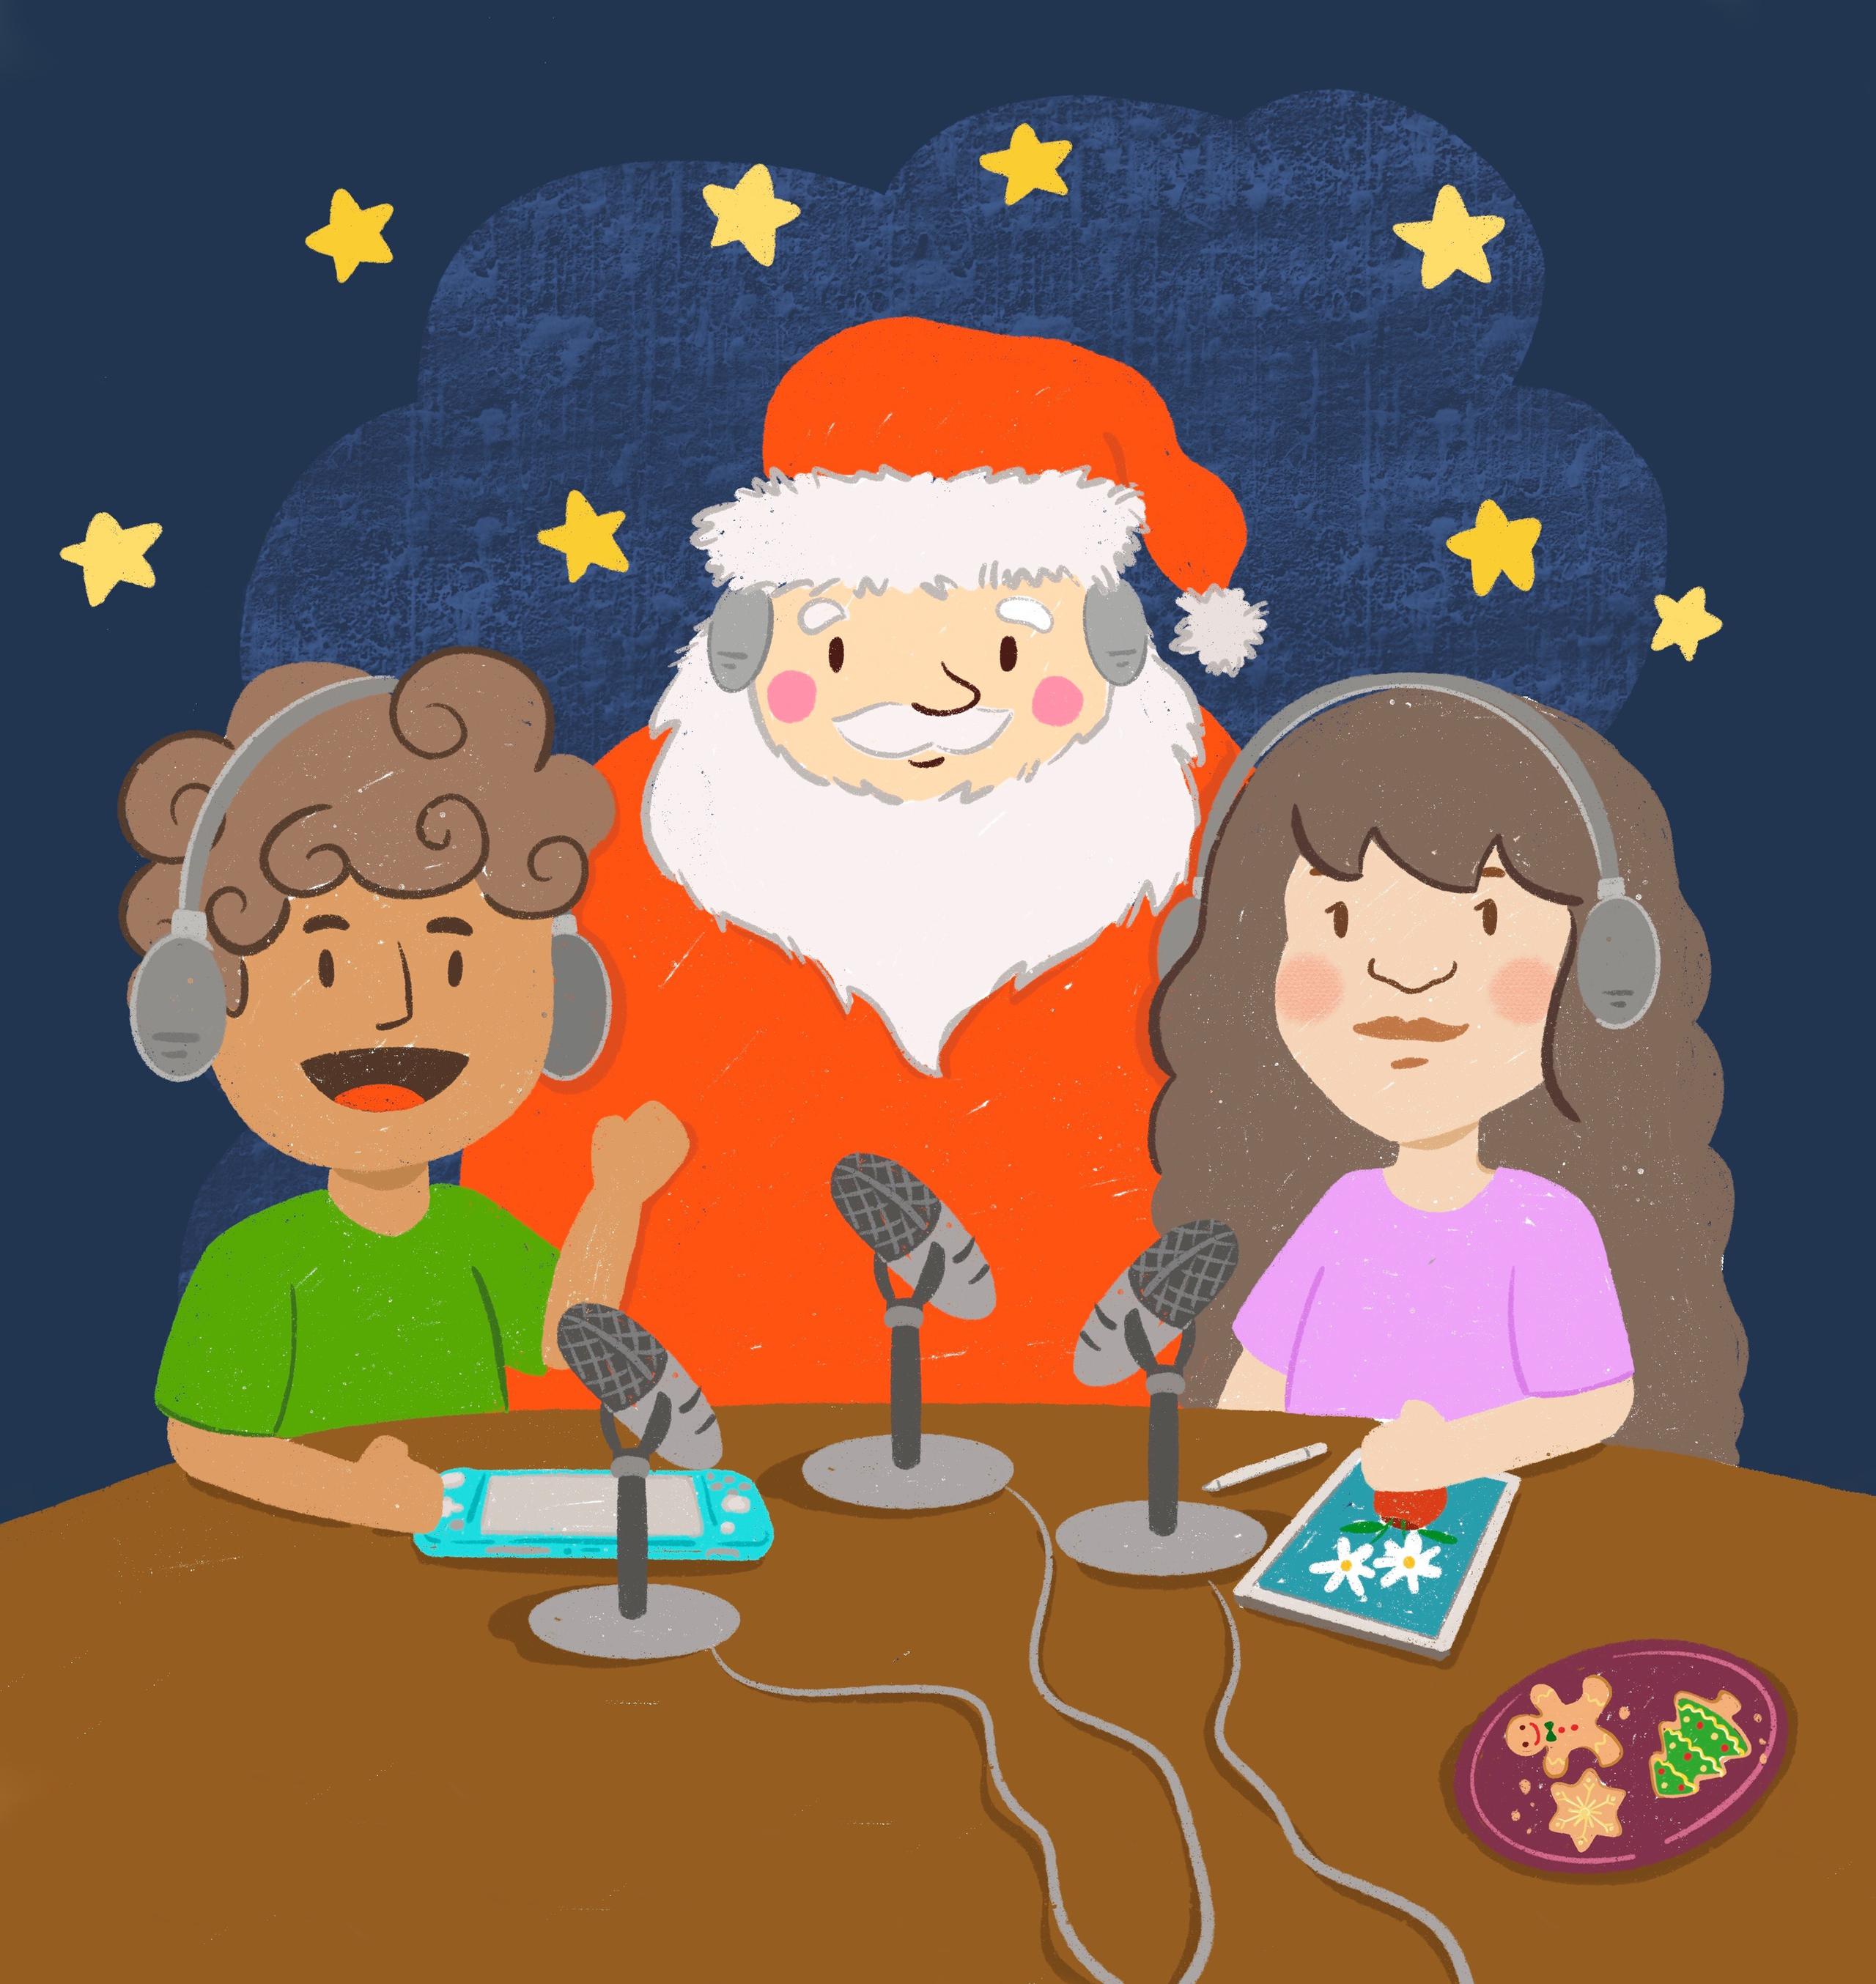 Entrevistar es una forma educativa y entretenida de conocer más a tus personas favoritas, ¡como Santa!